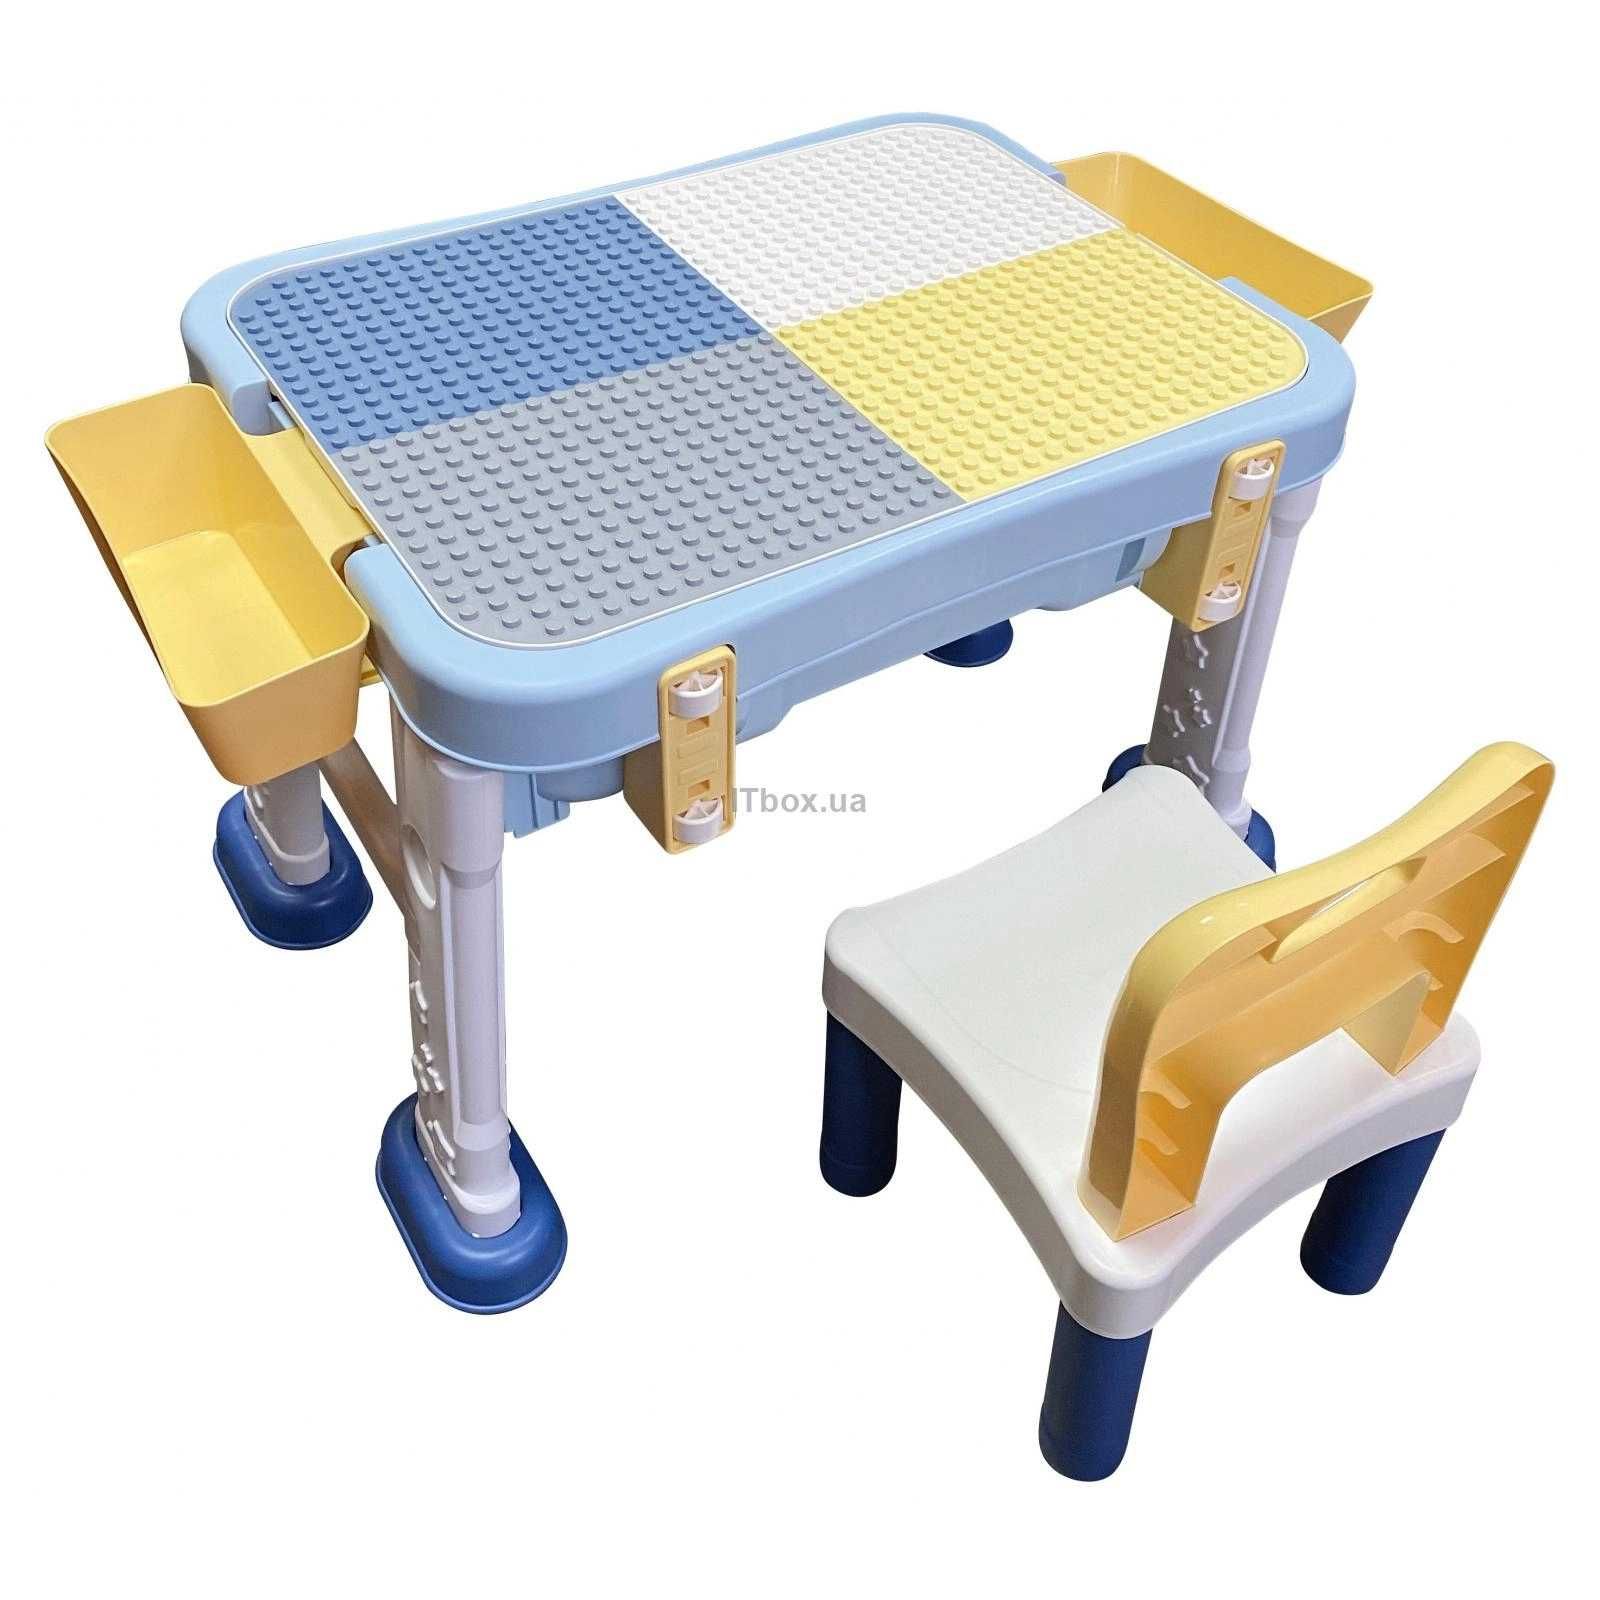 Дитячий стіл Microlab Toys Ігровий Lego-Центр + 1 стілець